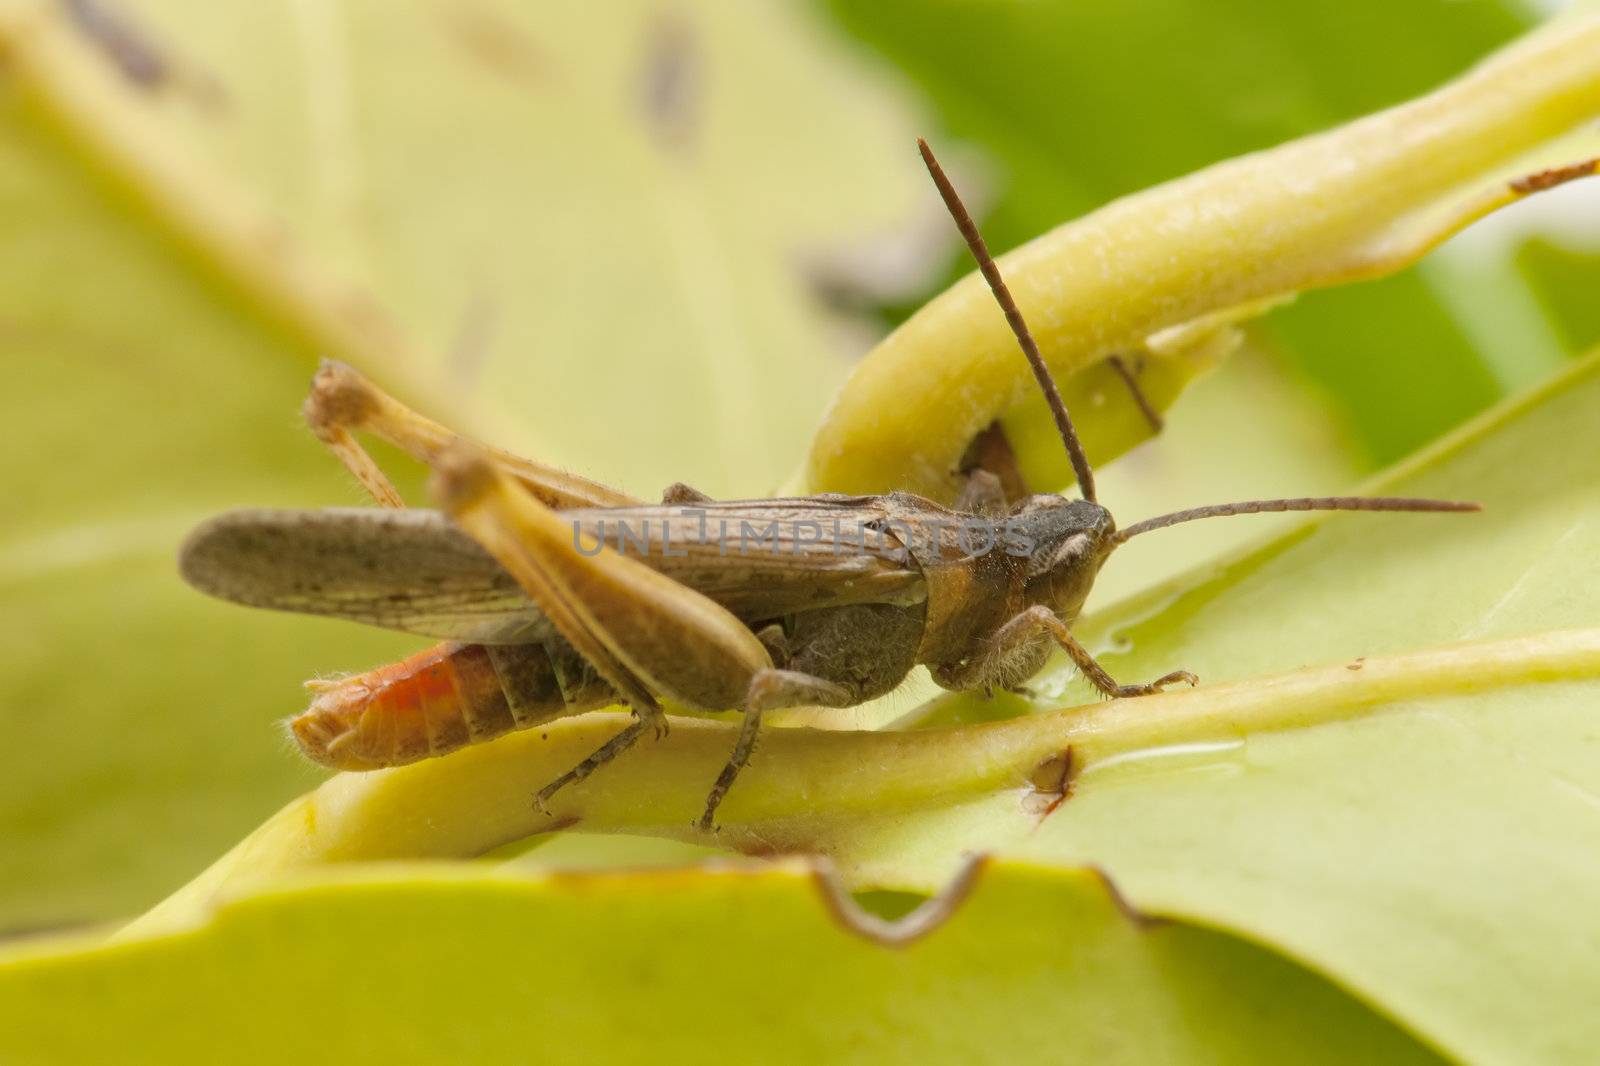 Grasshopper on green leaf by luiscar